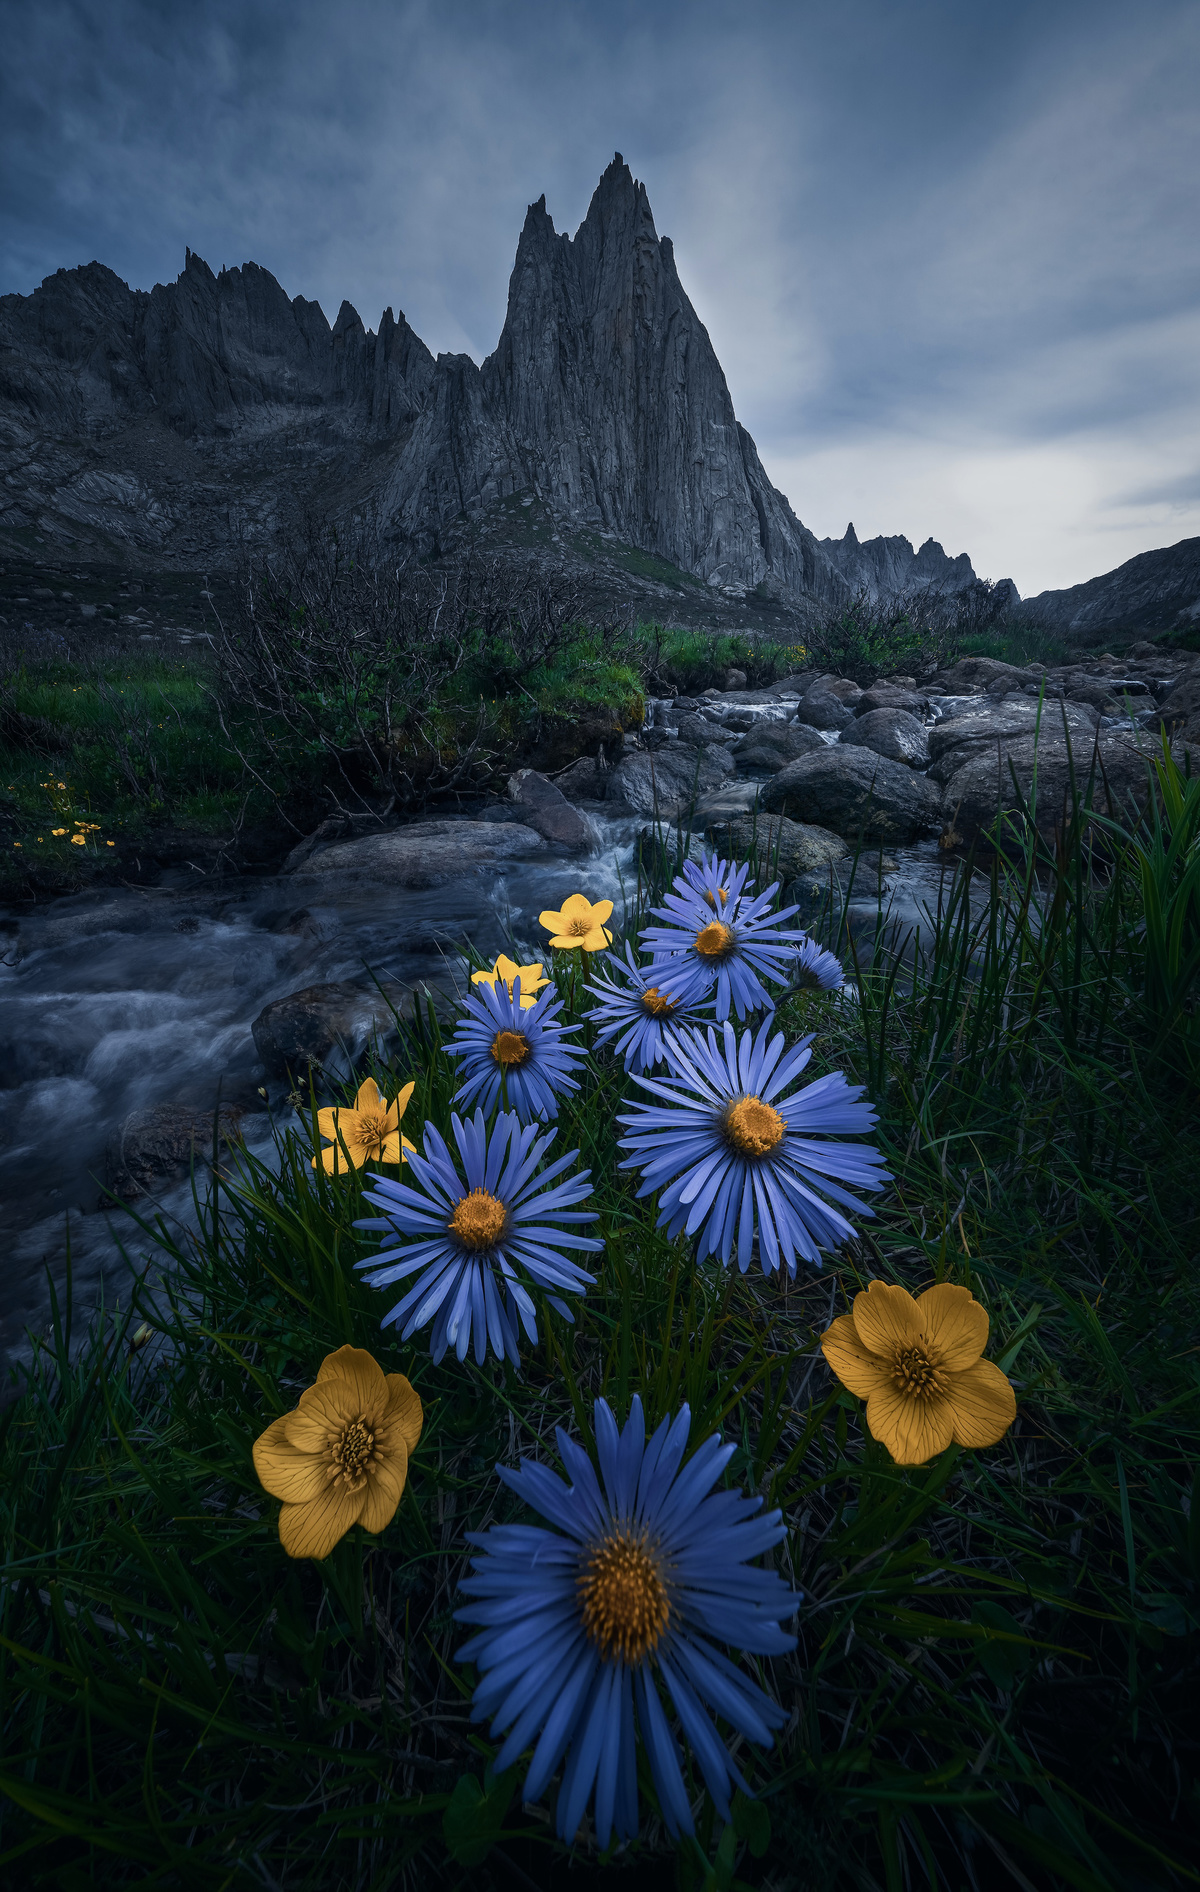 河边的蓝色野花 背景是山脉